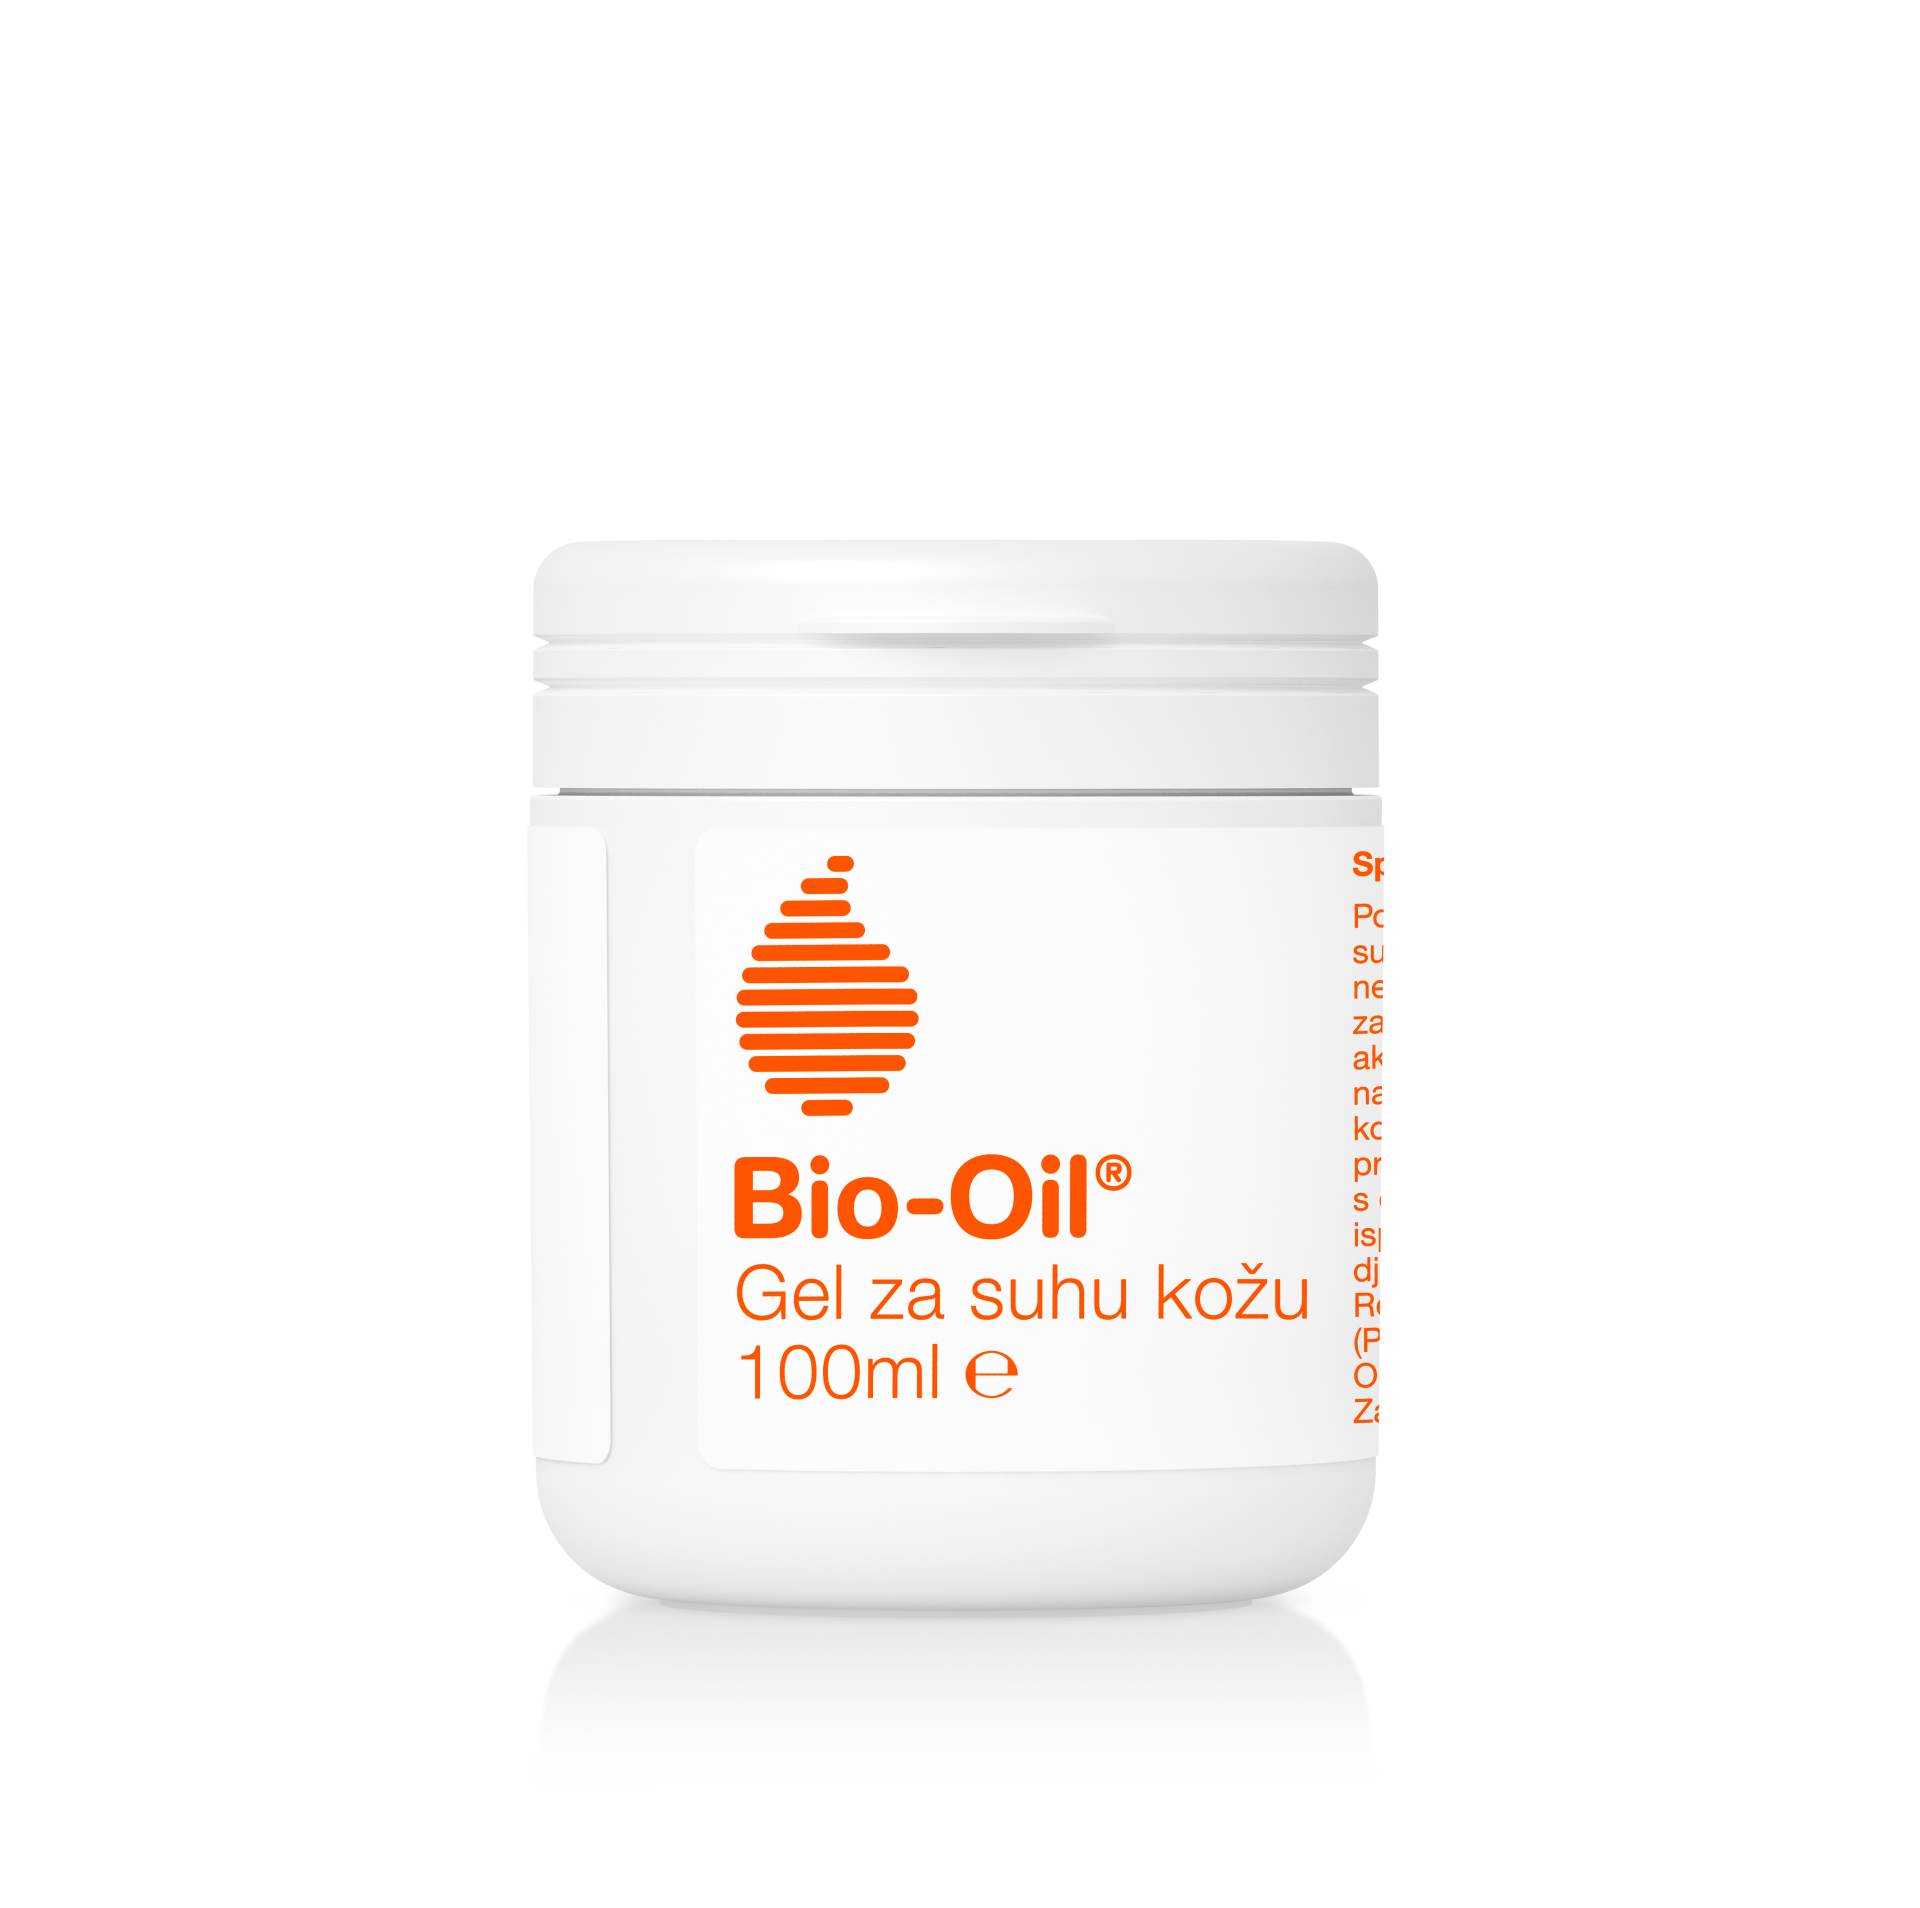 Bio-Oil® s ponosom predstavlja novu generaciju tretmana za suhu kožu